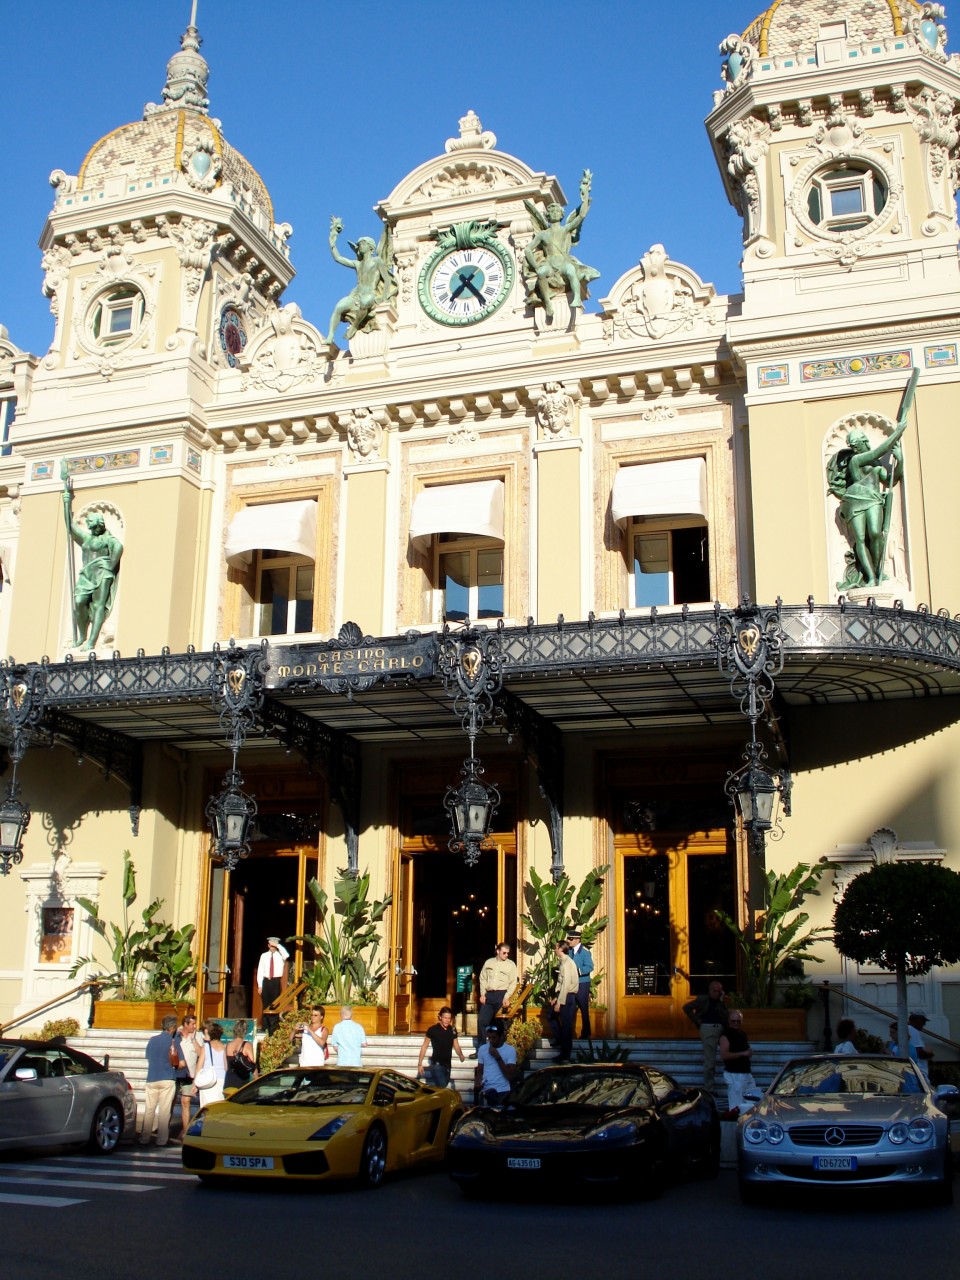 Casino_at_Monte_Carlo (Wikipedia)